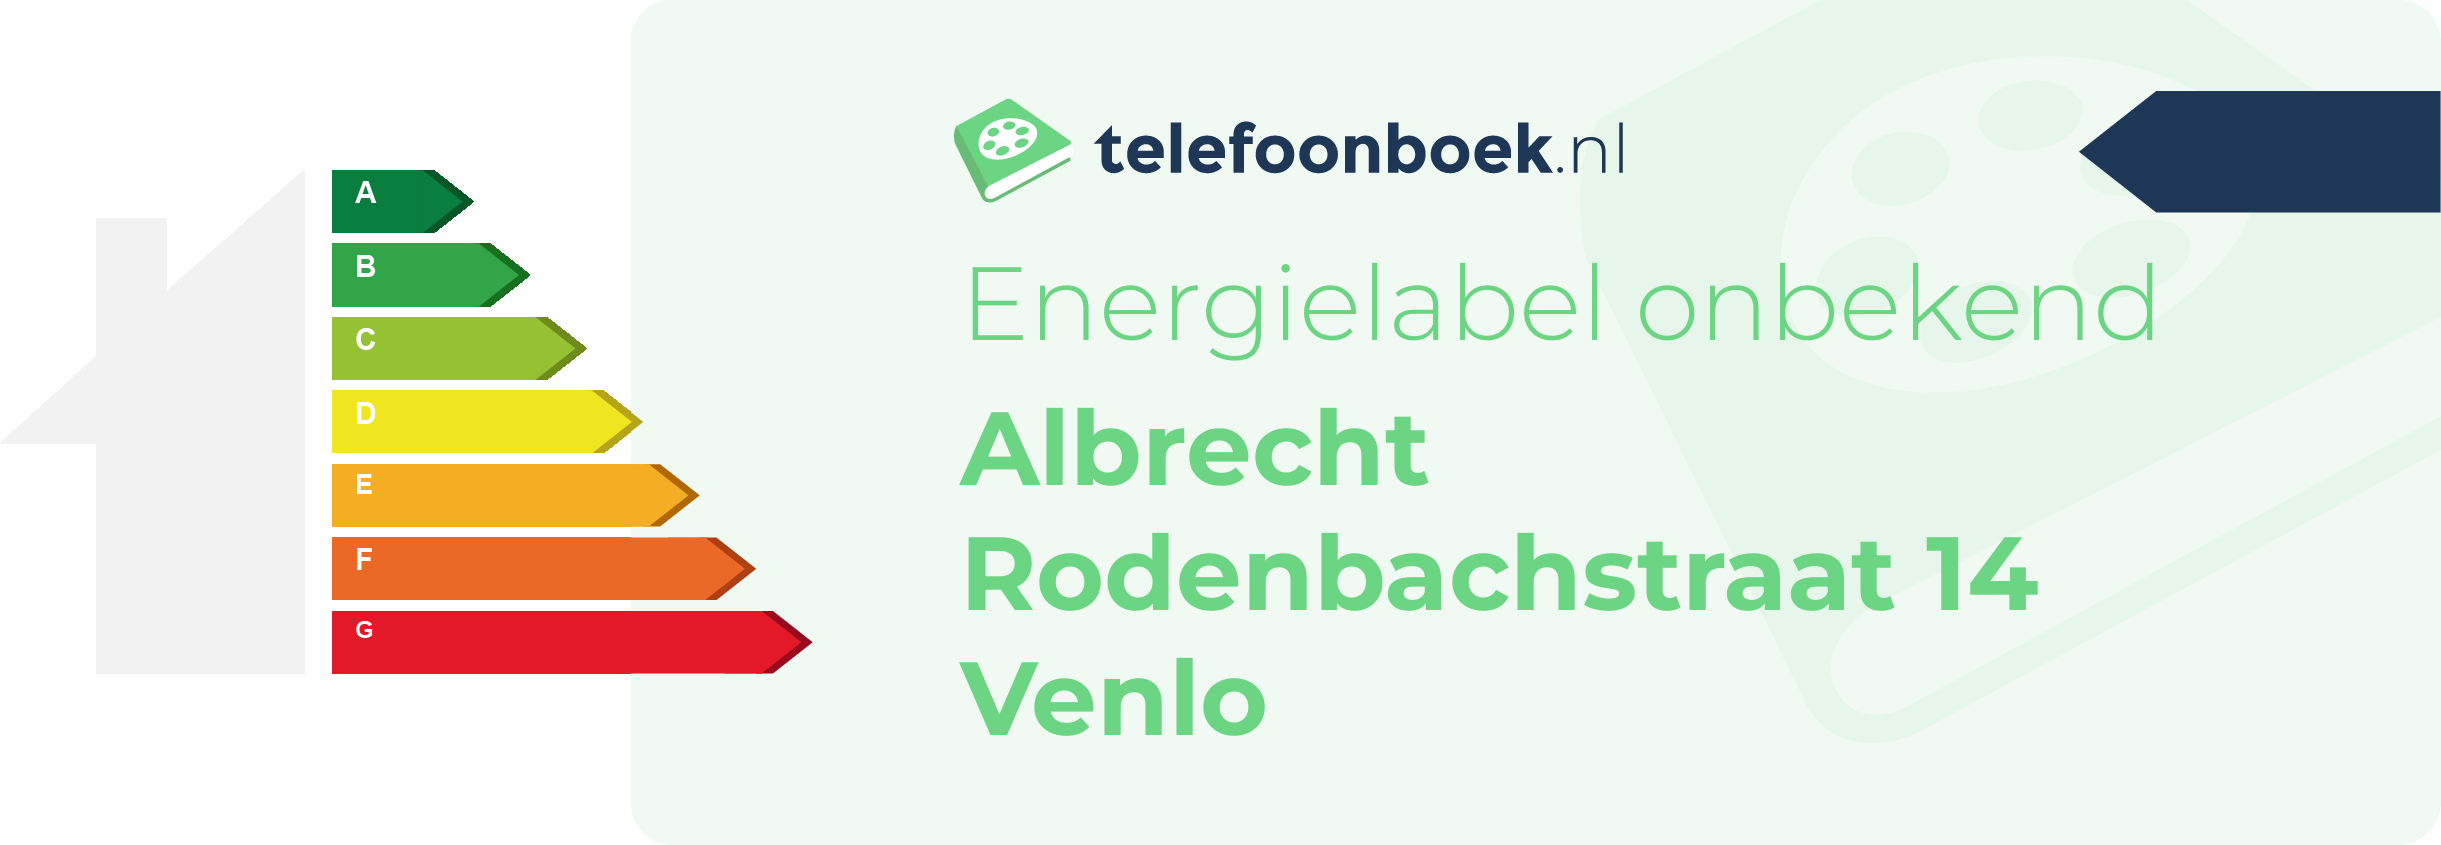 Energielabel Albrecht Rodenbachstraat 14 Venlo